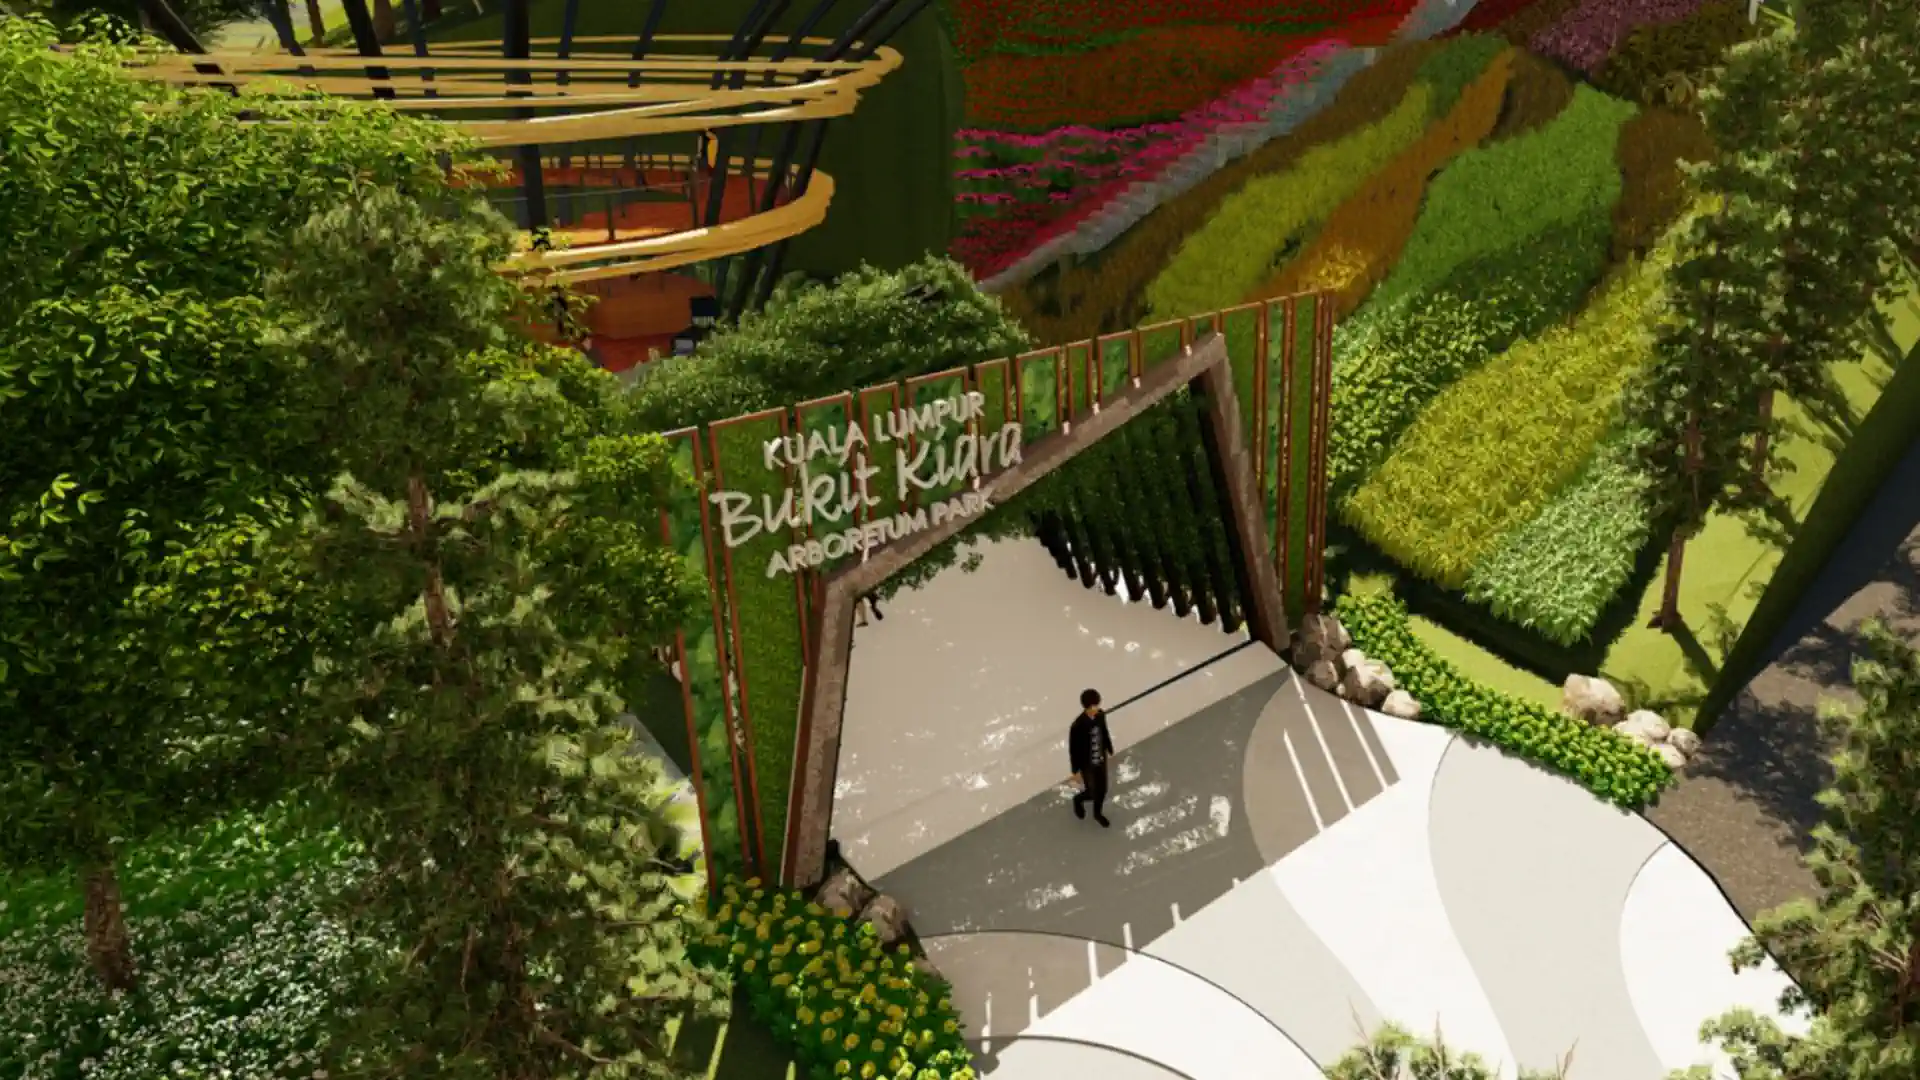 Project Hero - Taman Arboretum Bukit Kiara